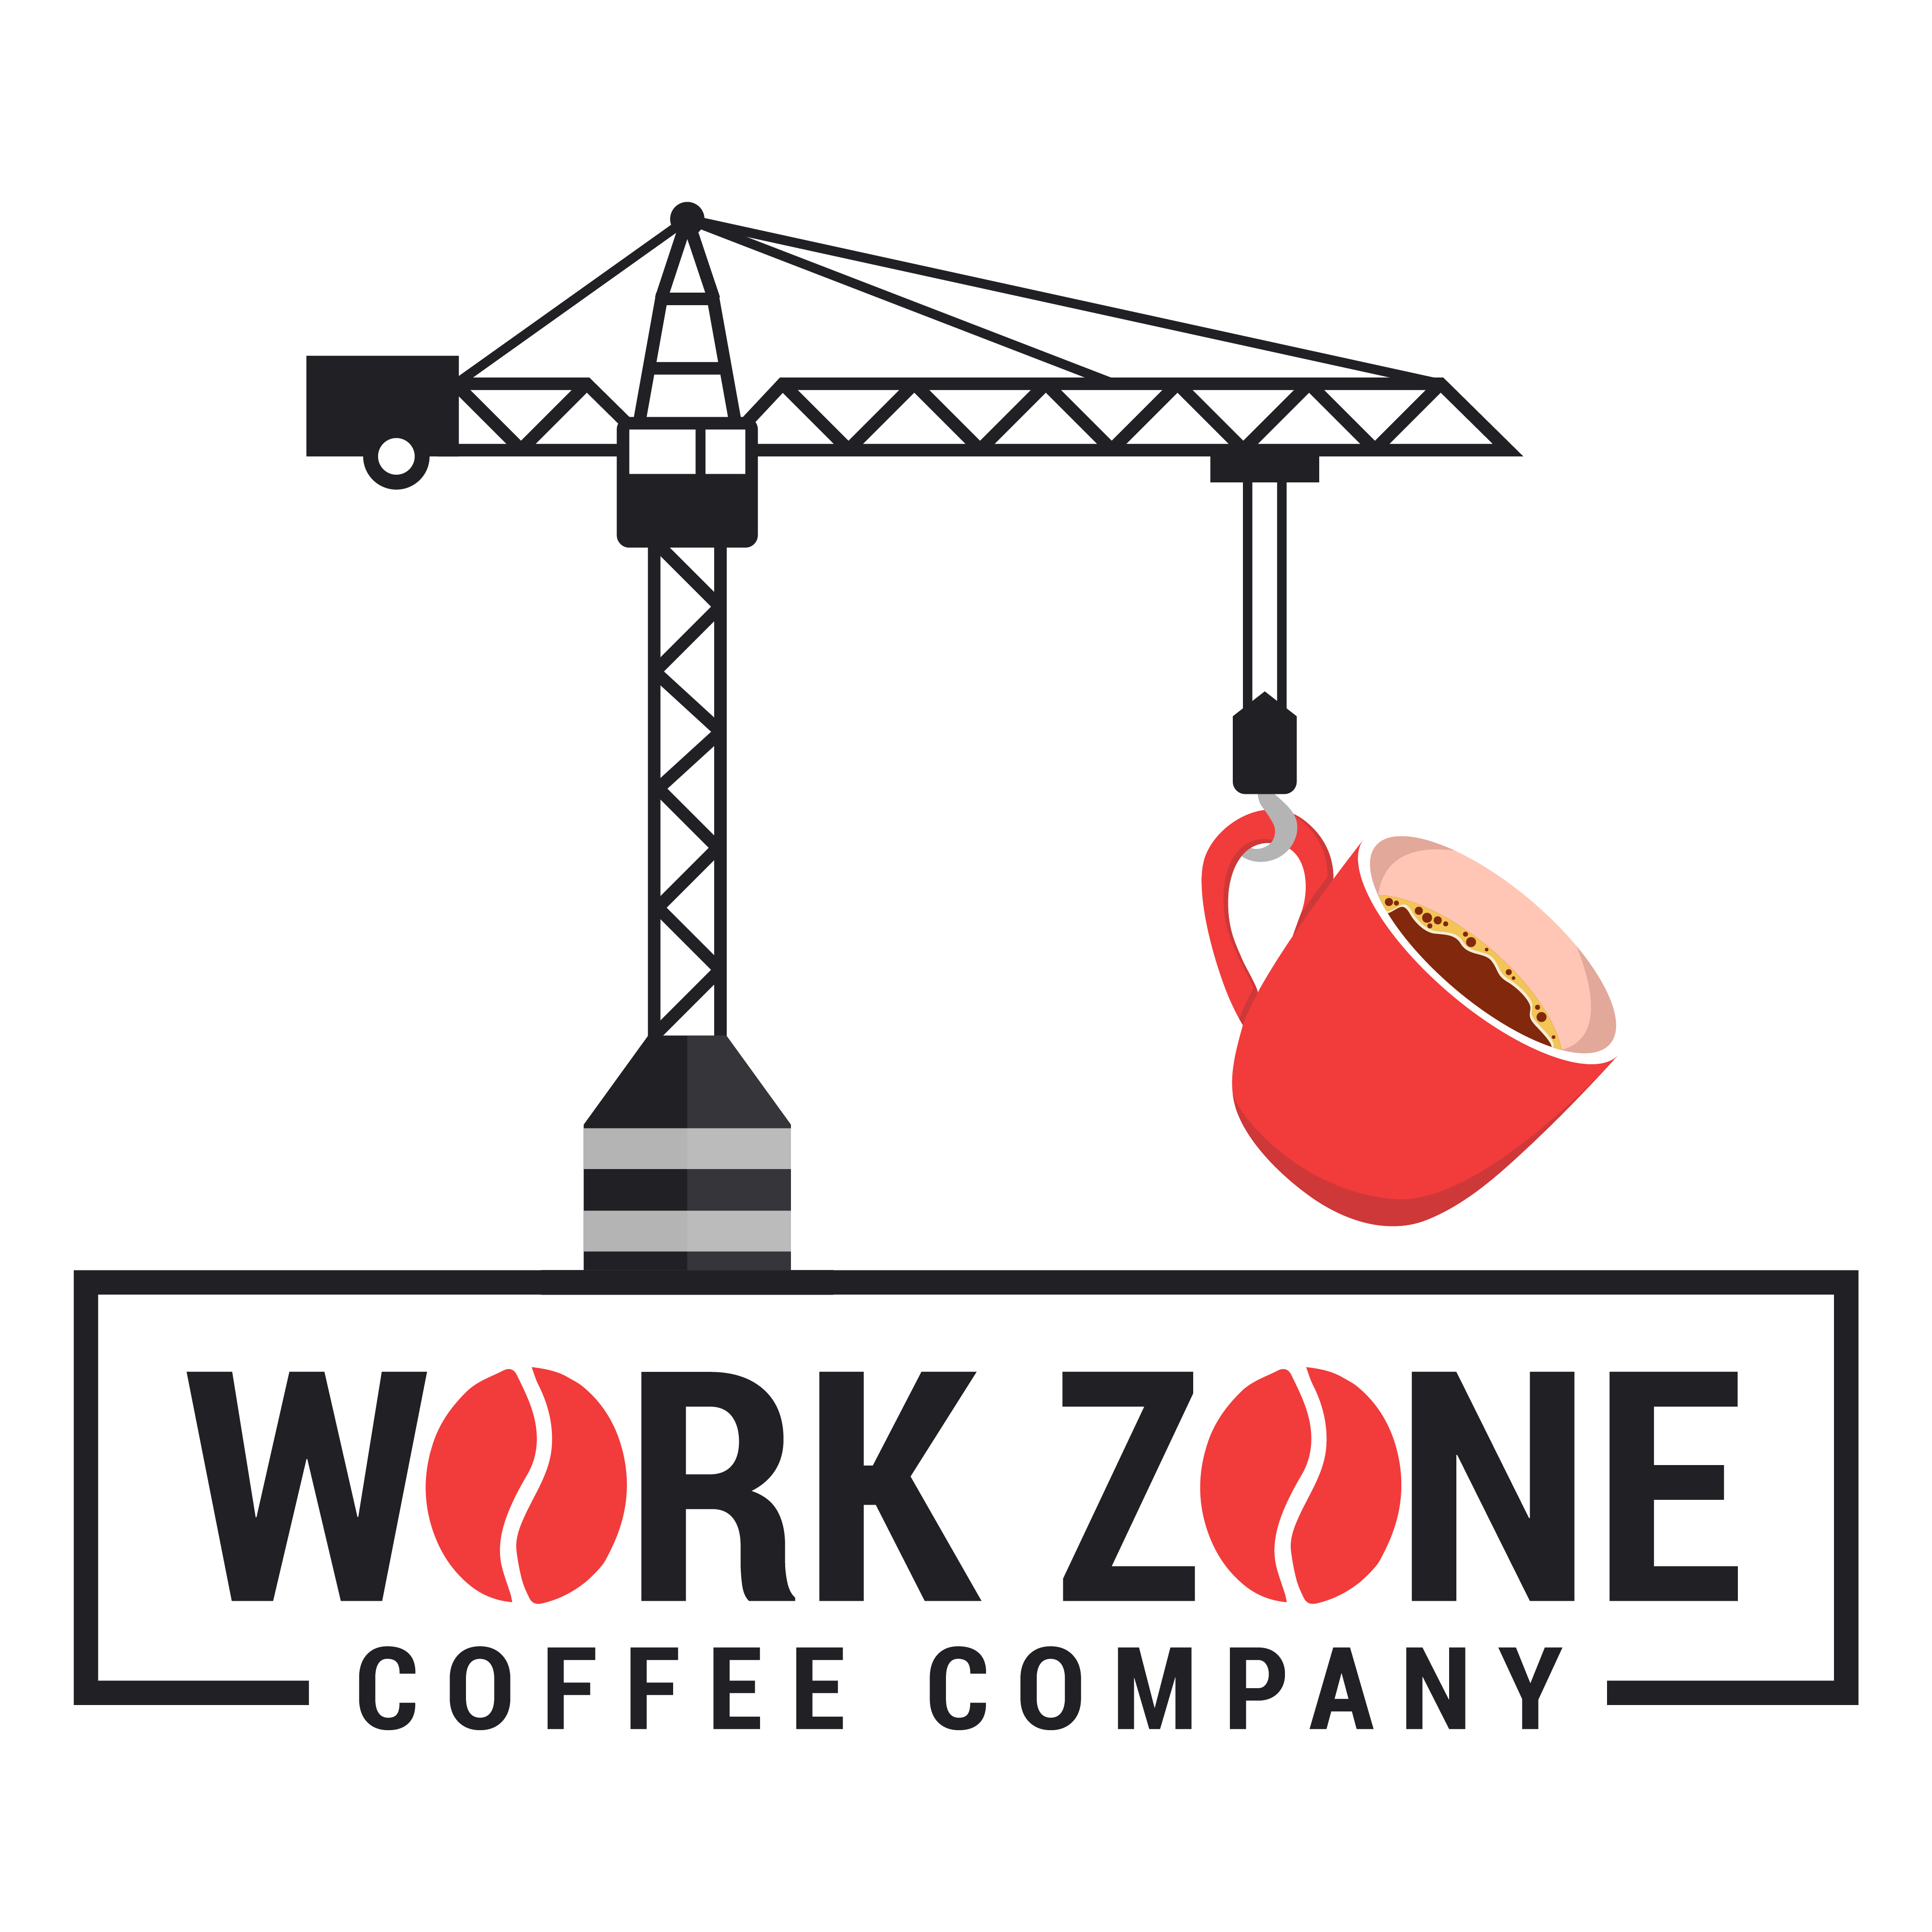 Work Zone Coffee Company logo